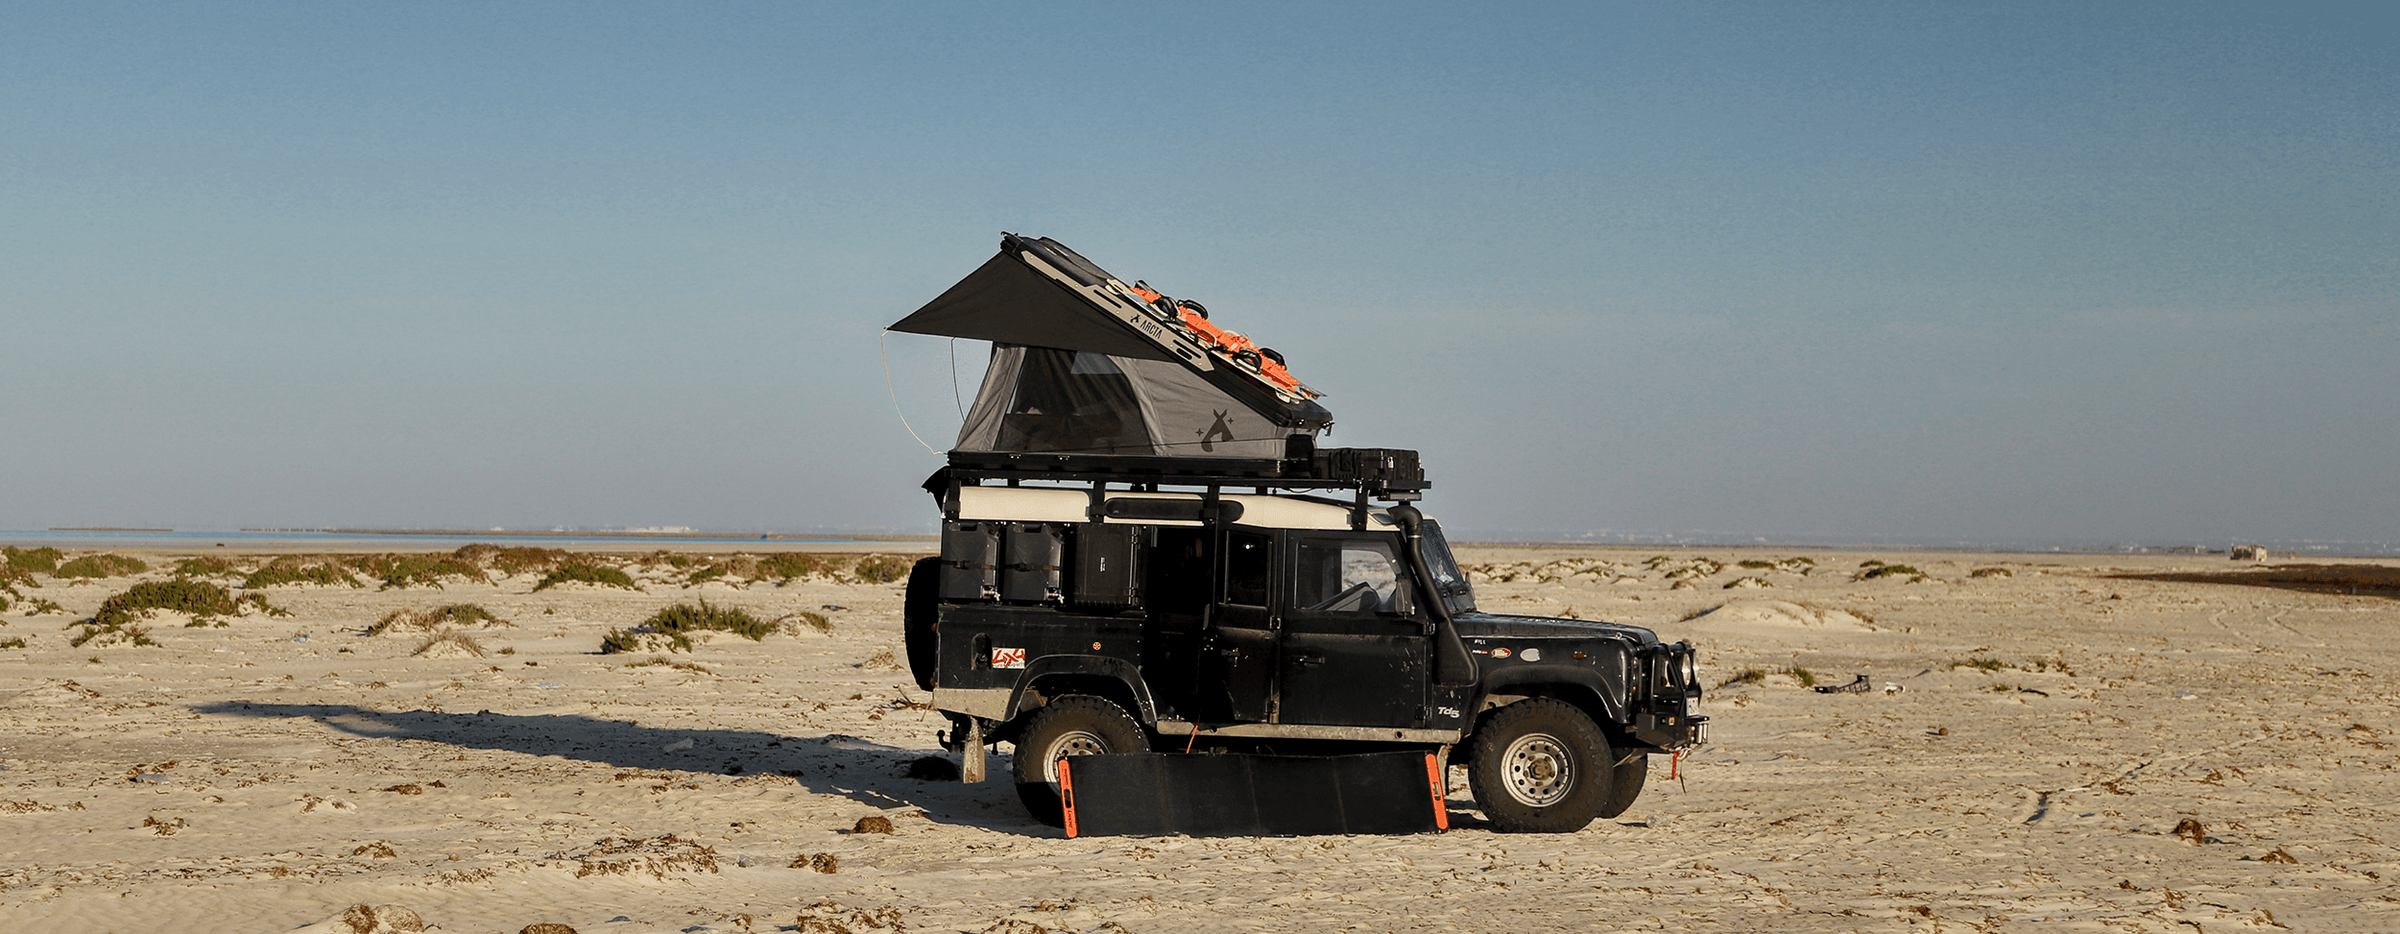 Range Rover Defender mit dem ARCTA Radix Alu Dachzelt in der Wüste